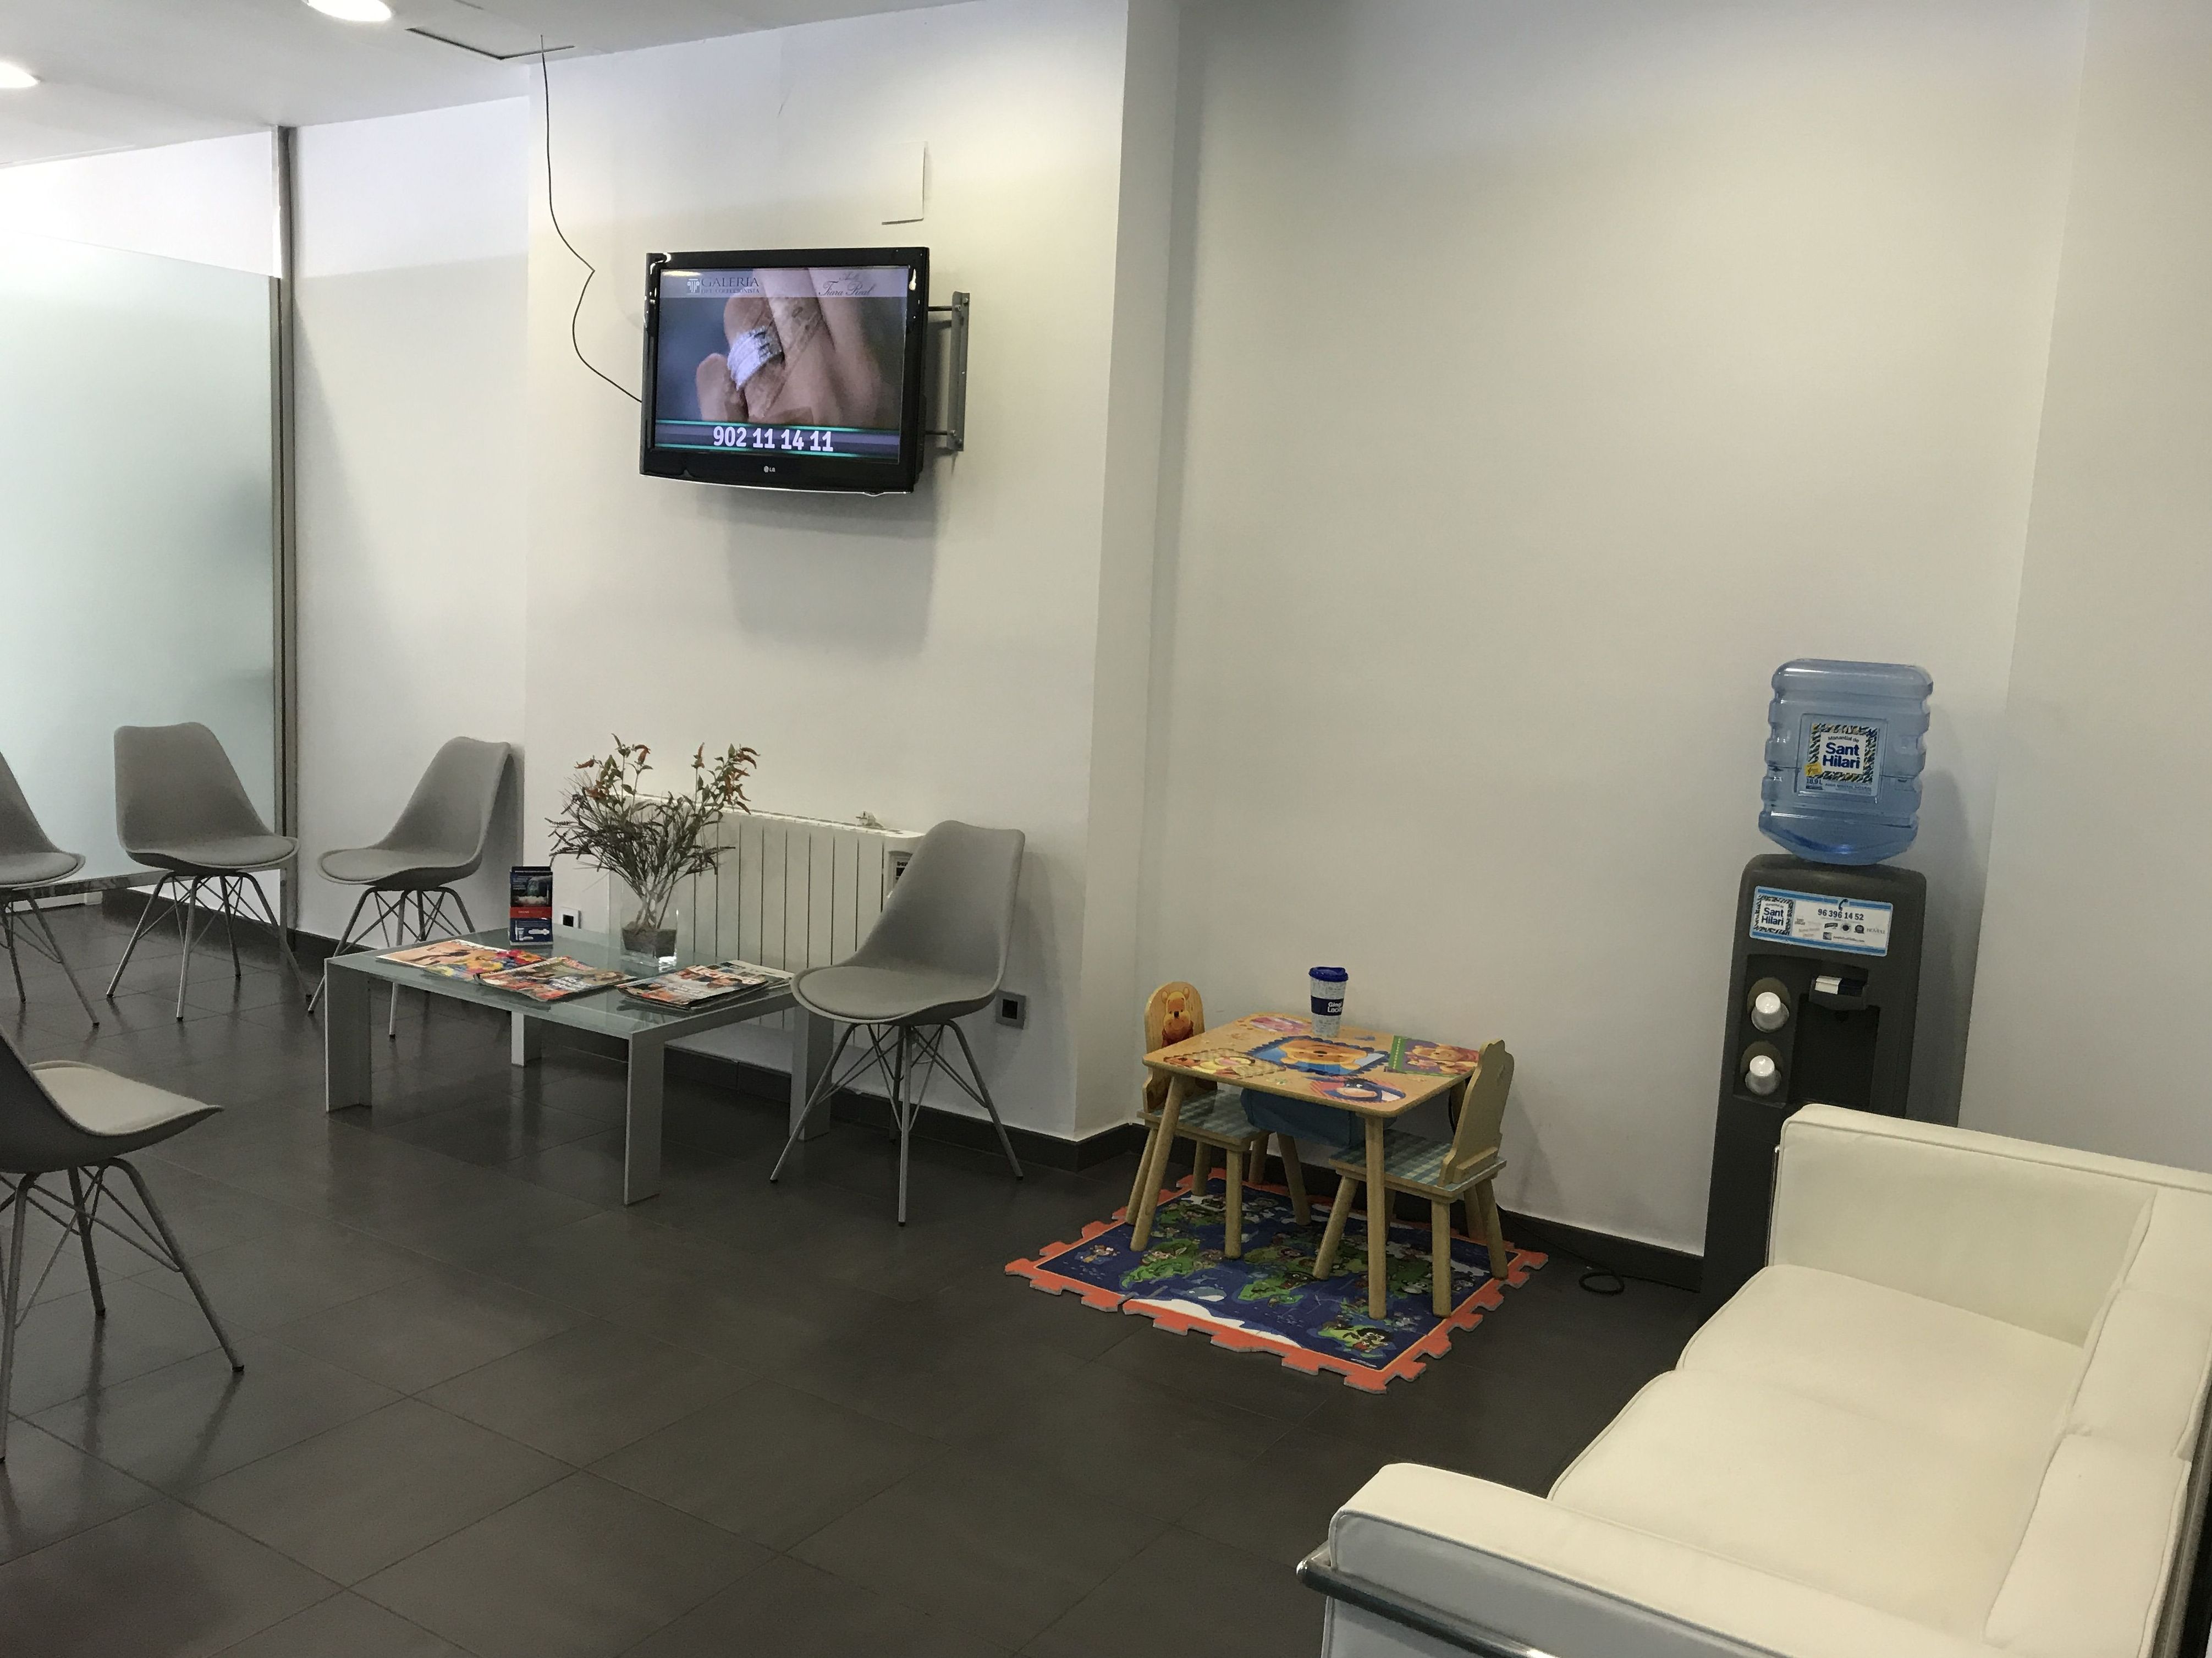 Sala de espera 1 Clínica dental Fortaña-Giménez en Torrent, Valencia